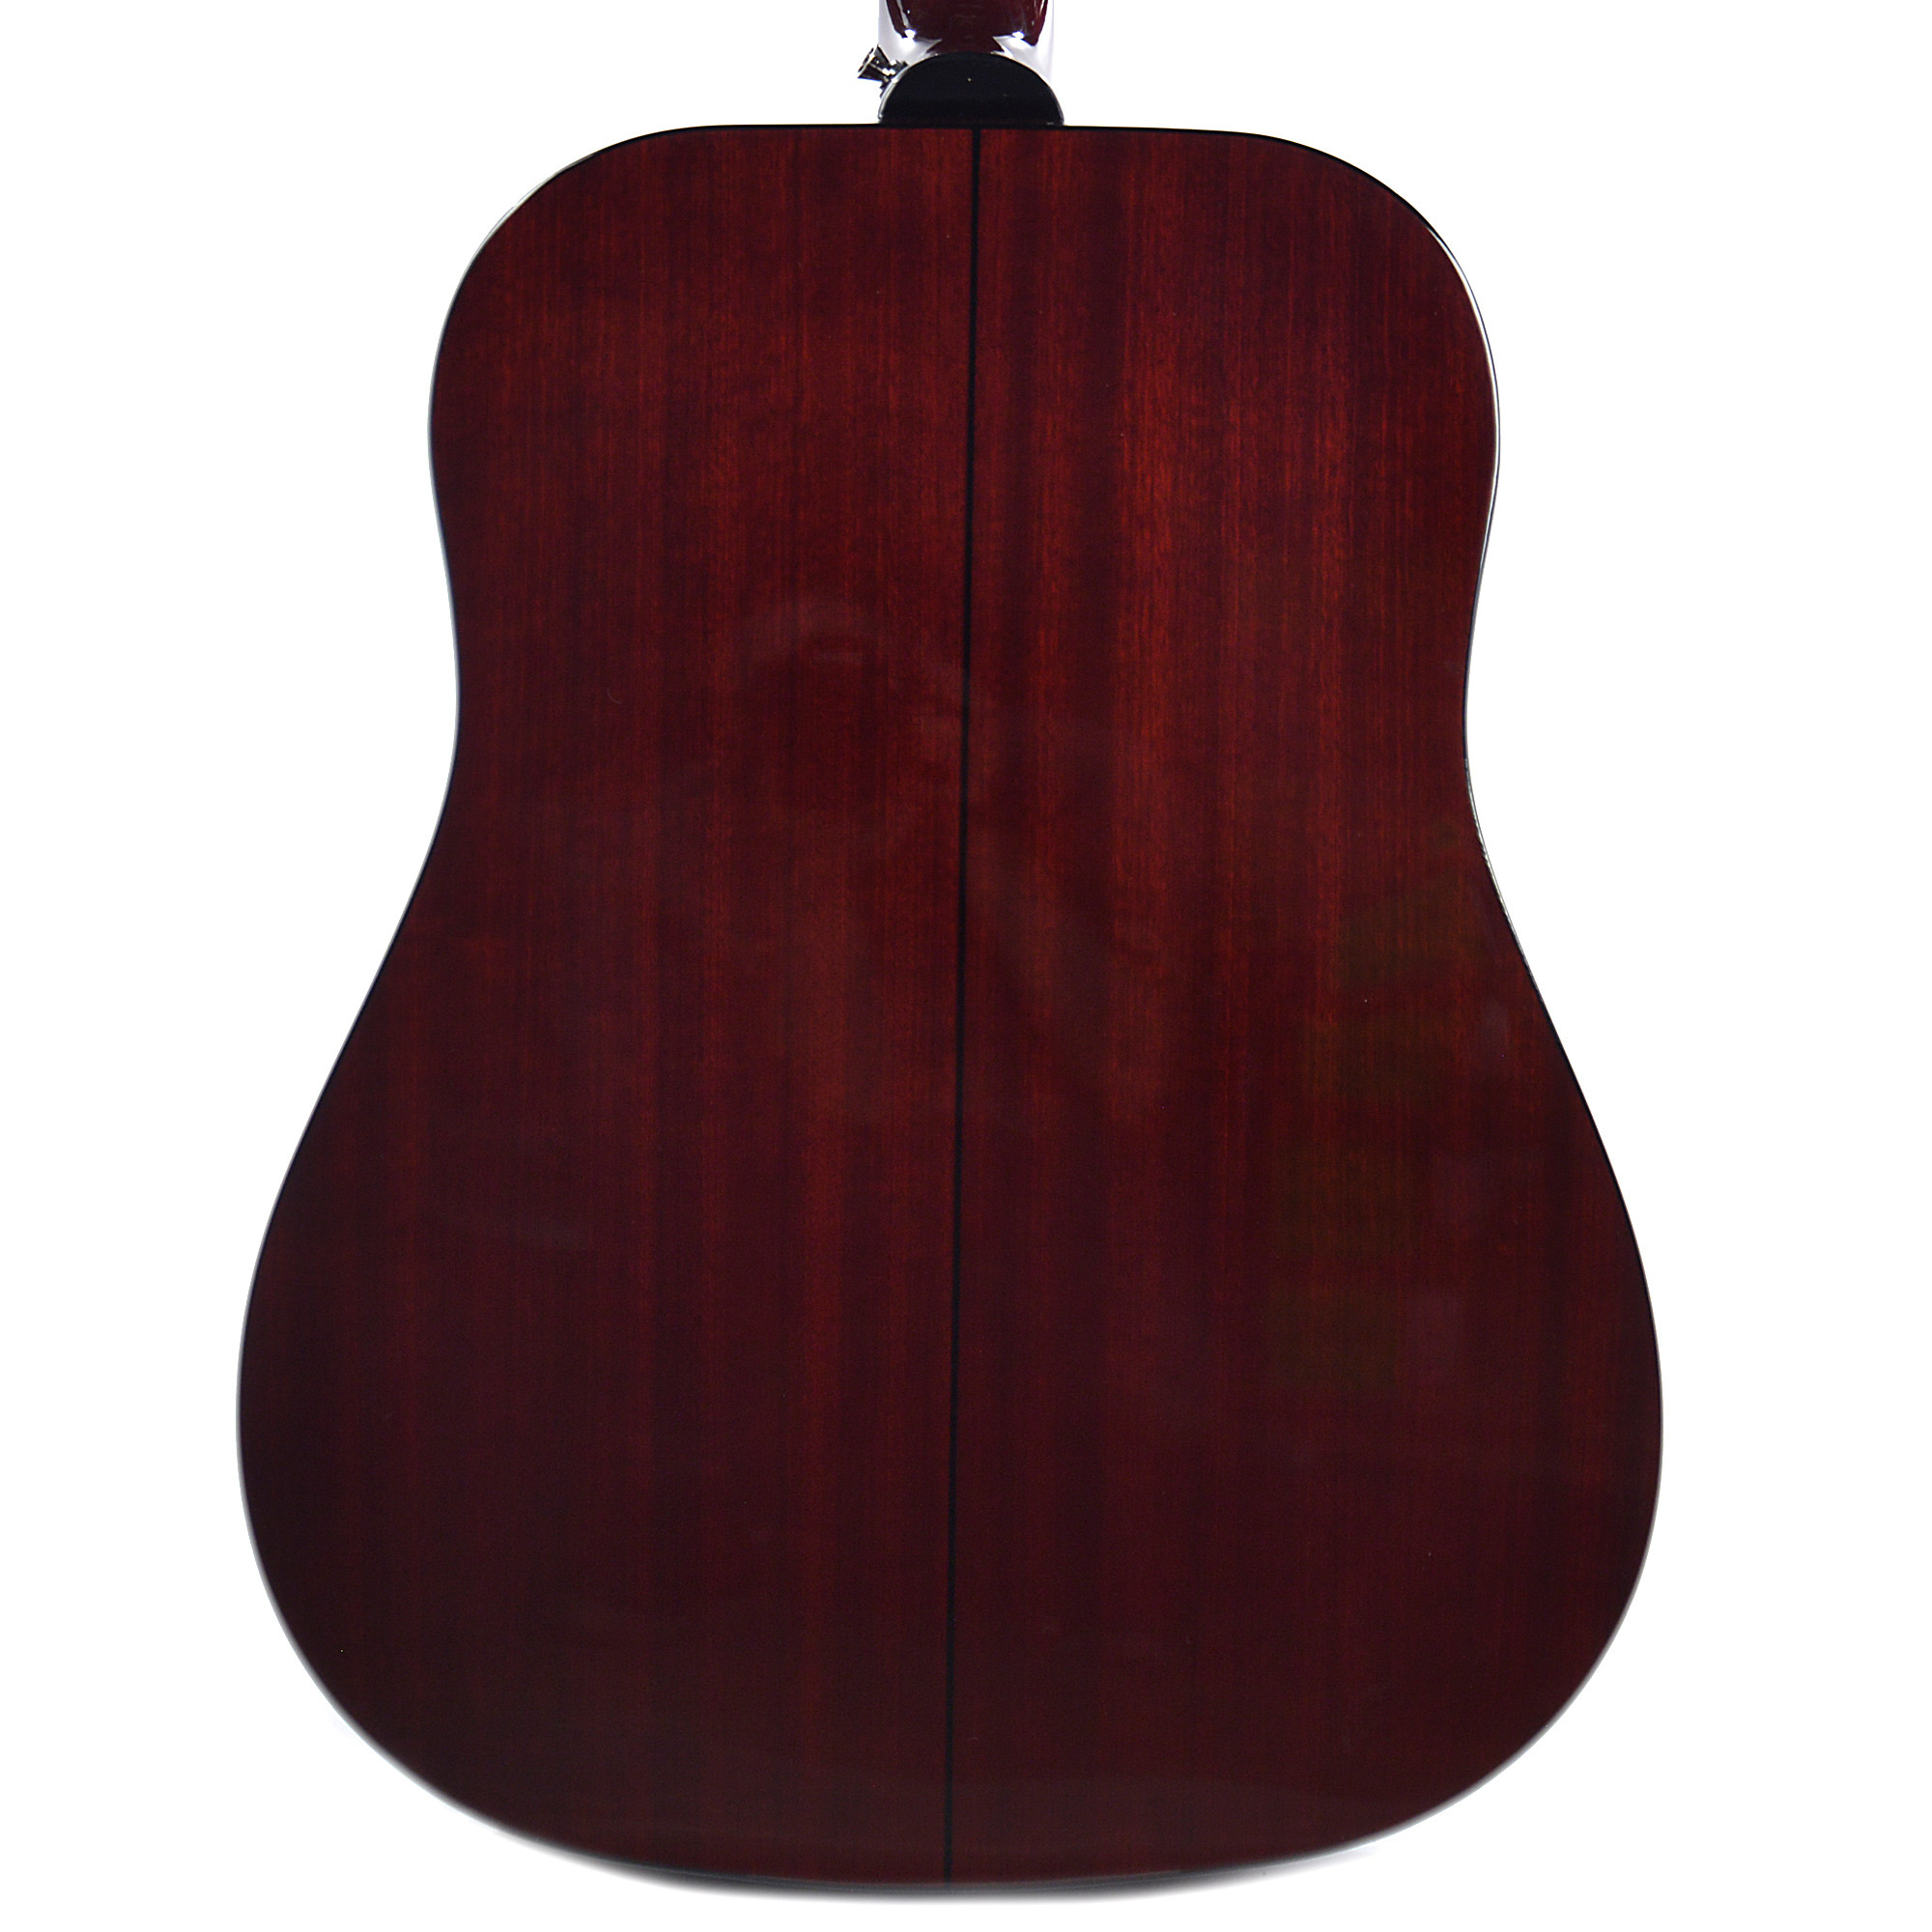 Epiphone Pro-1 Plus Acoustic Dreadnought Epicea Acajou - Wine Red - Acoustic guitar & electro - Variation 2